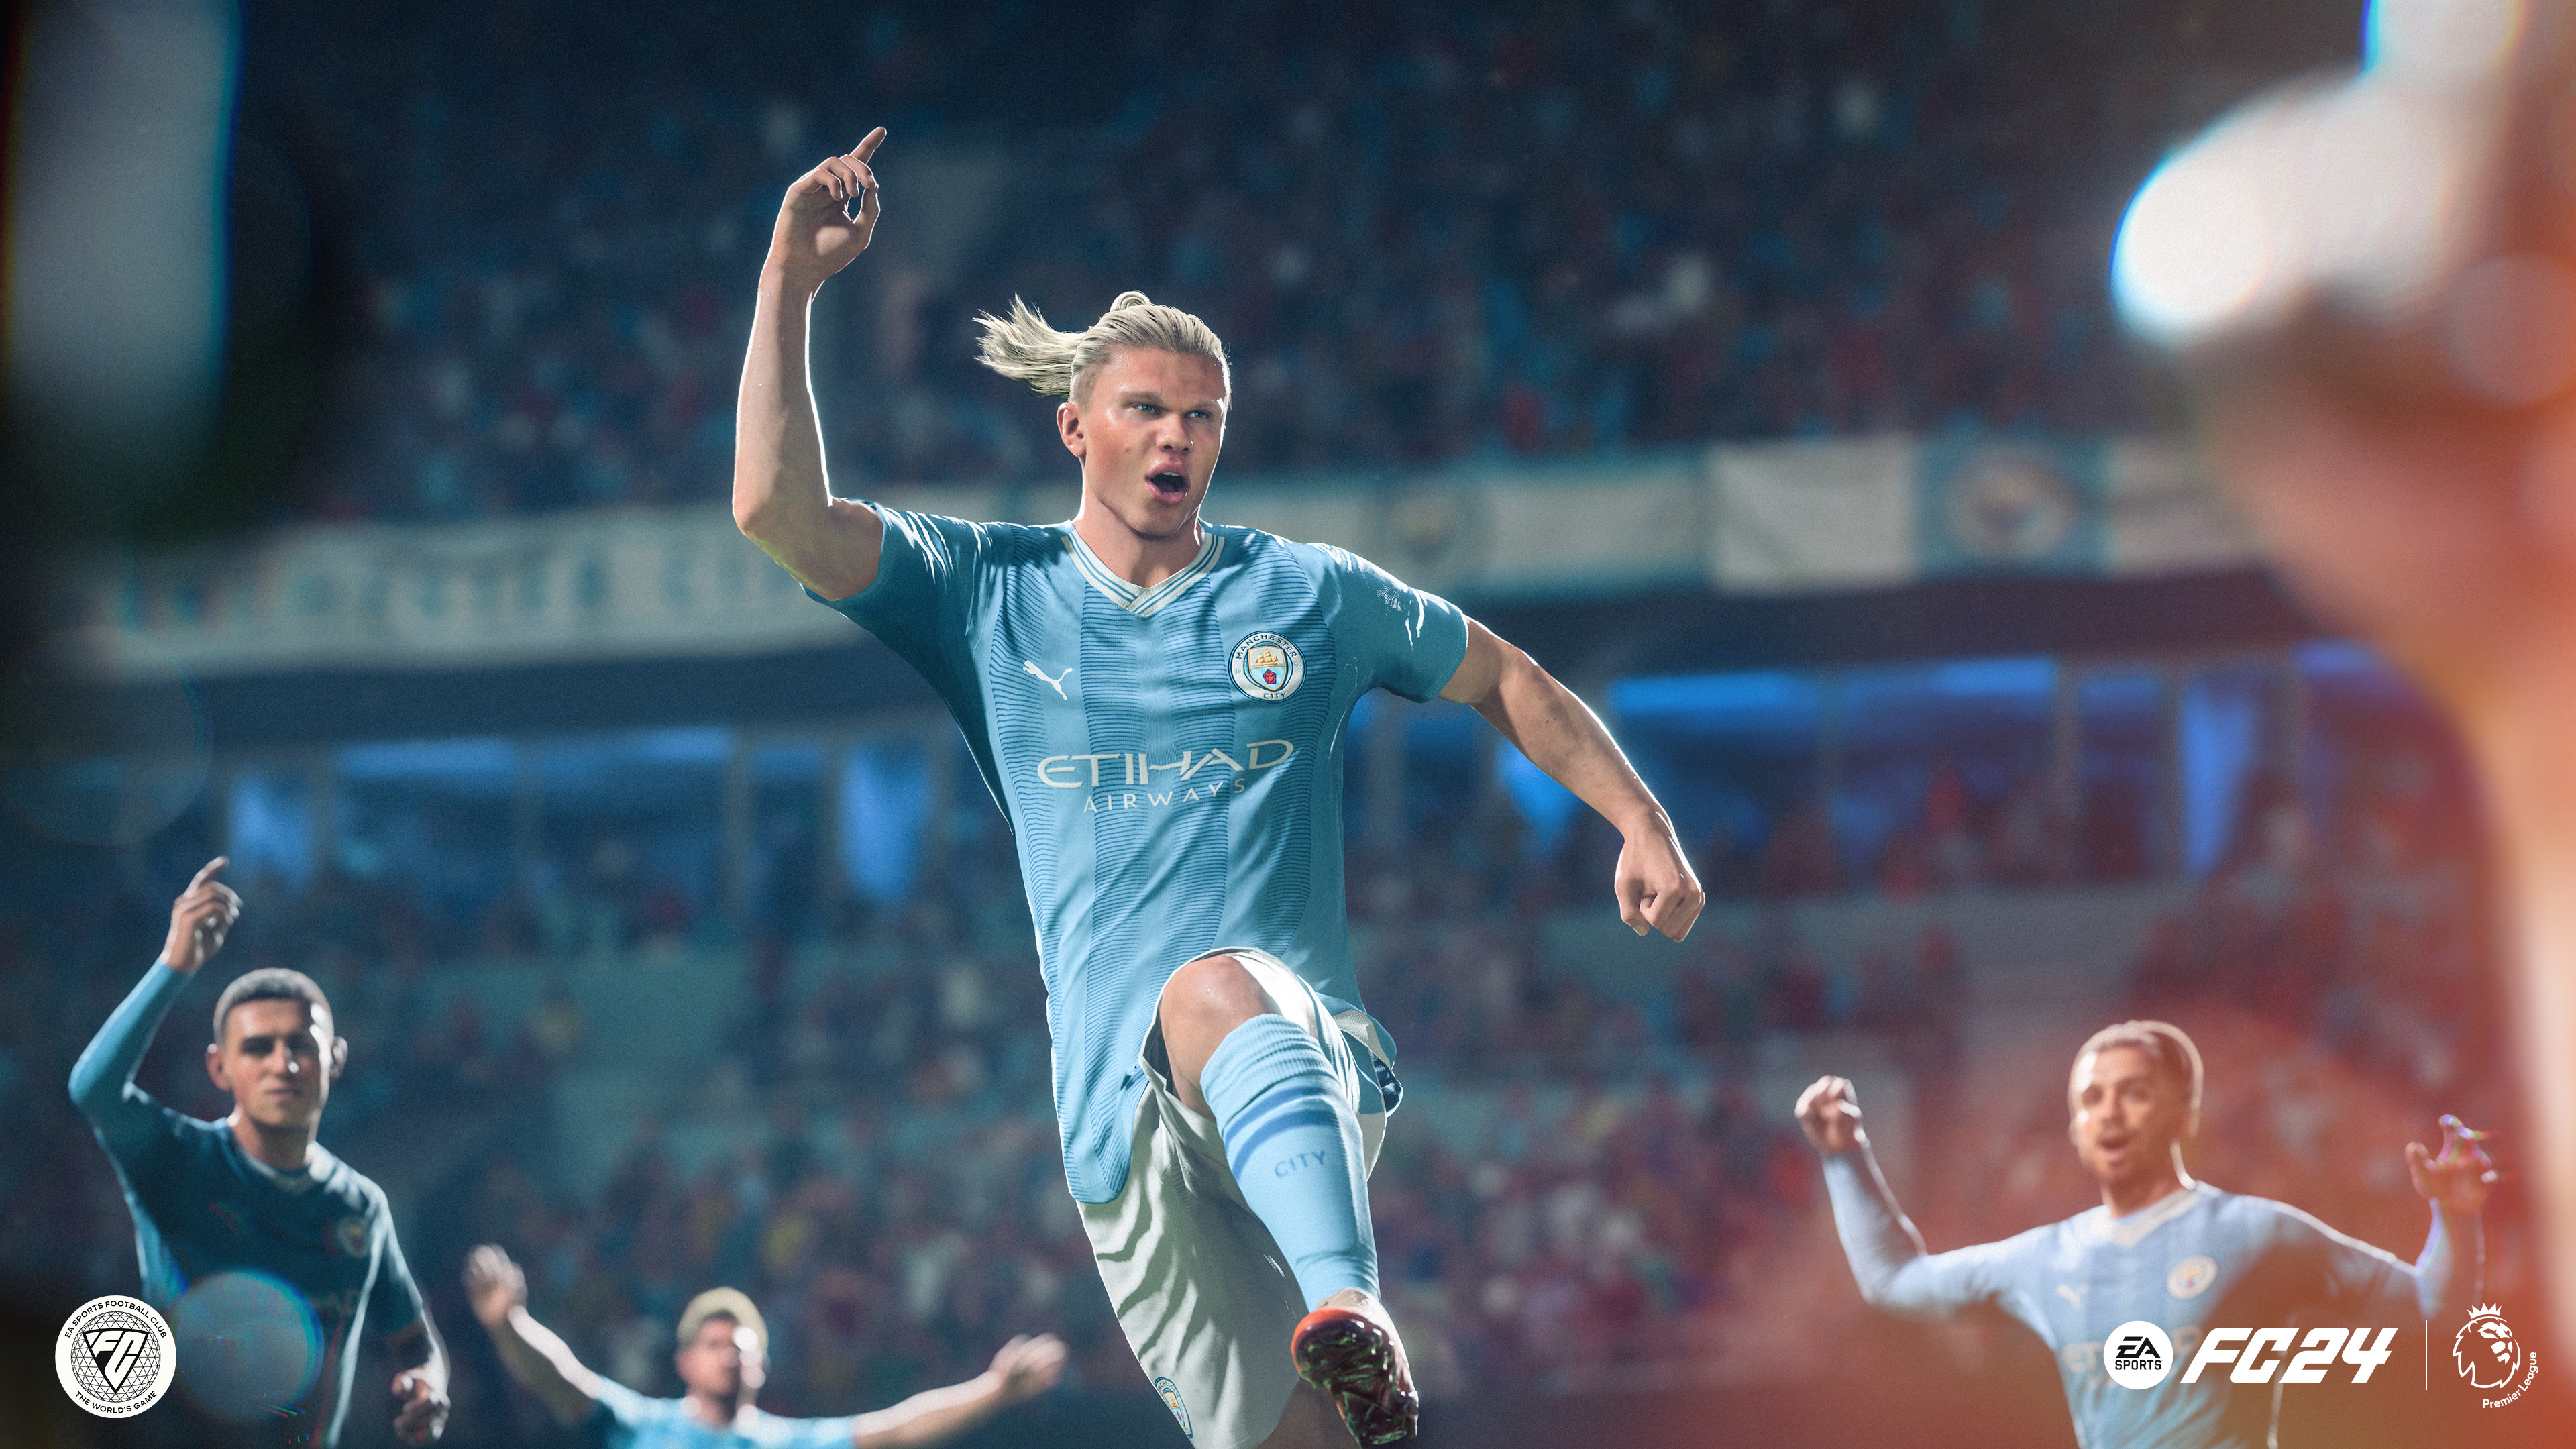 Oferta EA Sports FC 24: 10 primeras horas en EA Play por 0,99